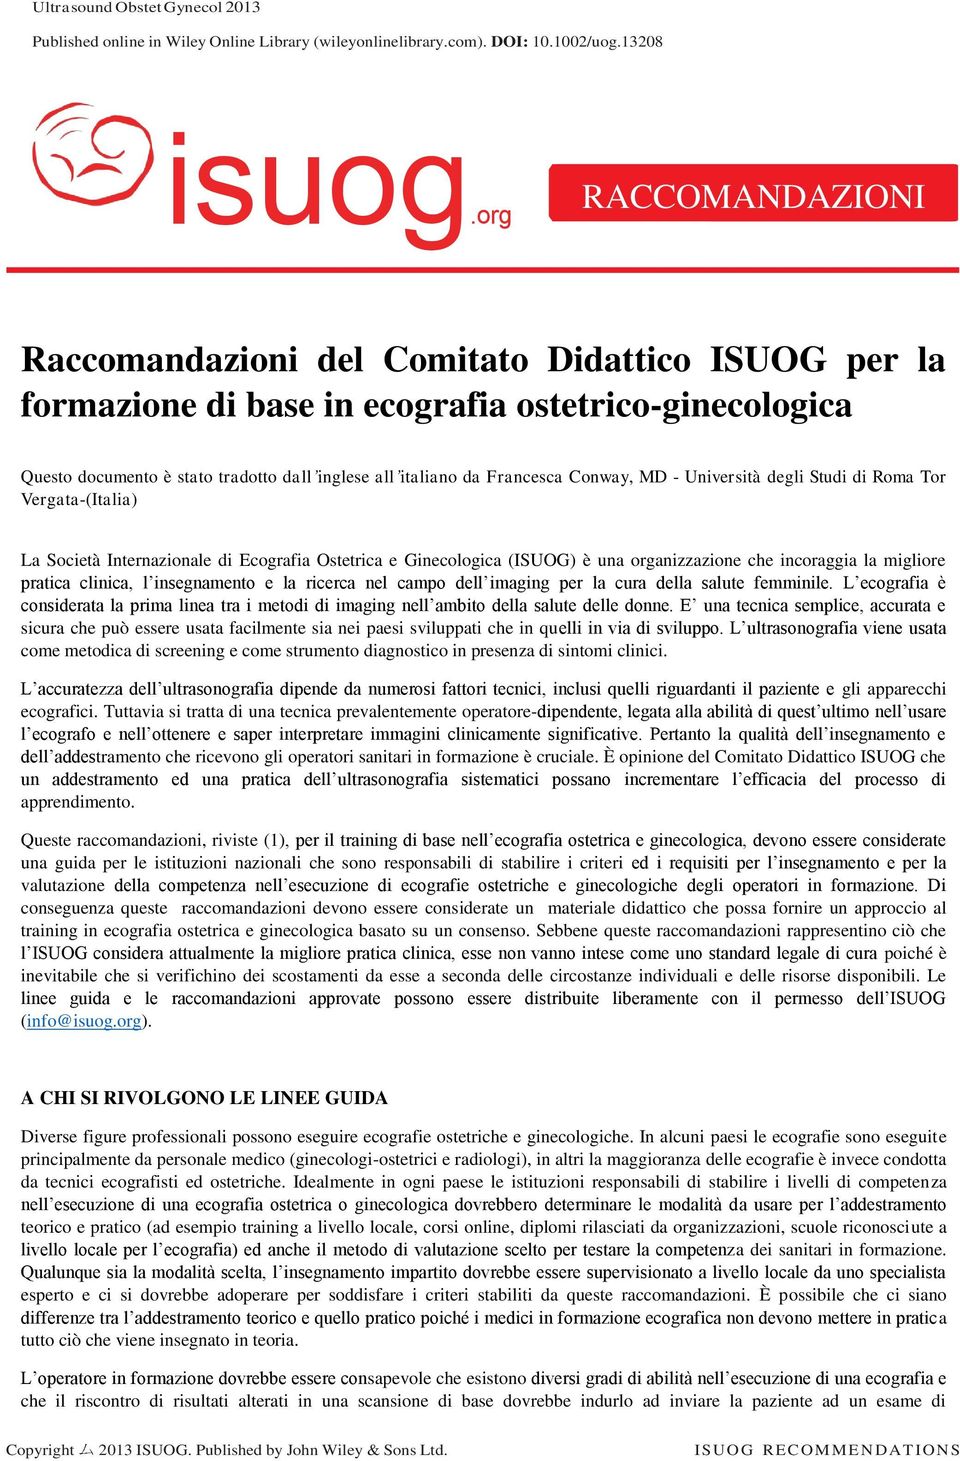 Conway, MD - Università degli Studi di Roma Tor Vergata-(Italia) La Società Internazionale di Ecografia Ostetrica e Ginecologica (ISUOG) è una organizzazione che incoraggia la migliore pratica